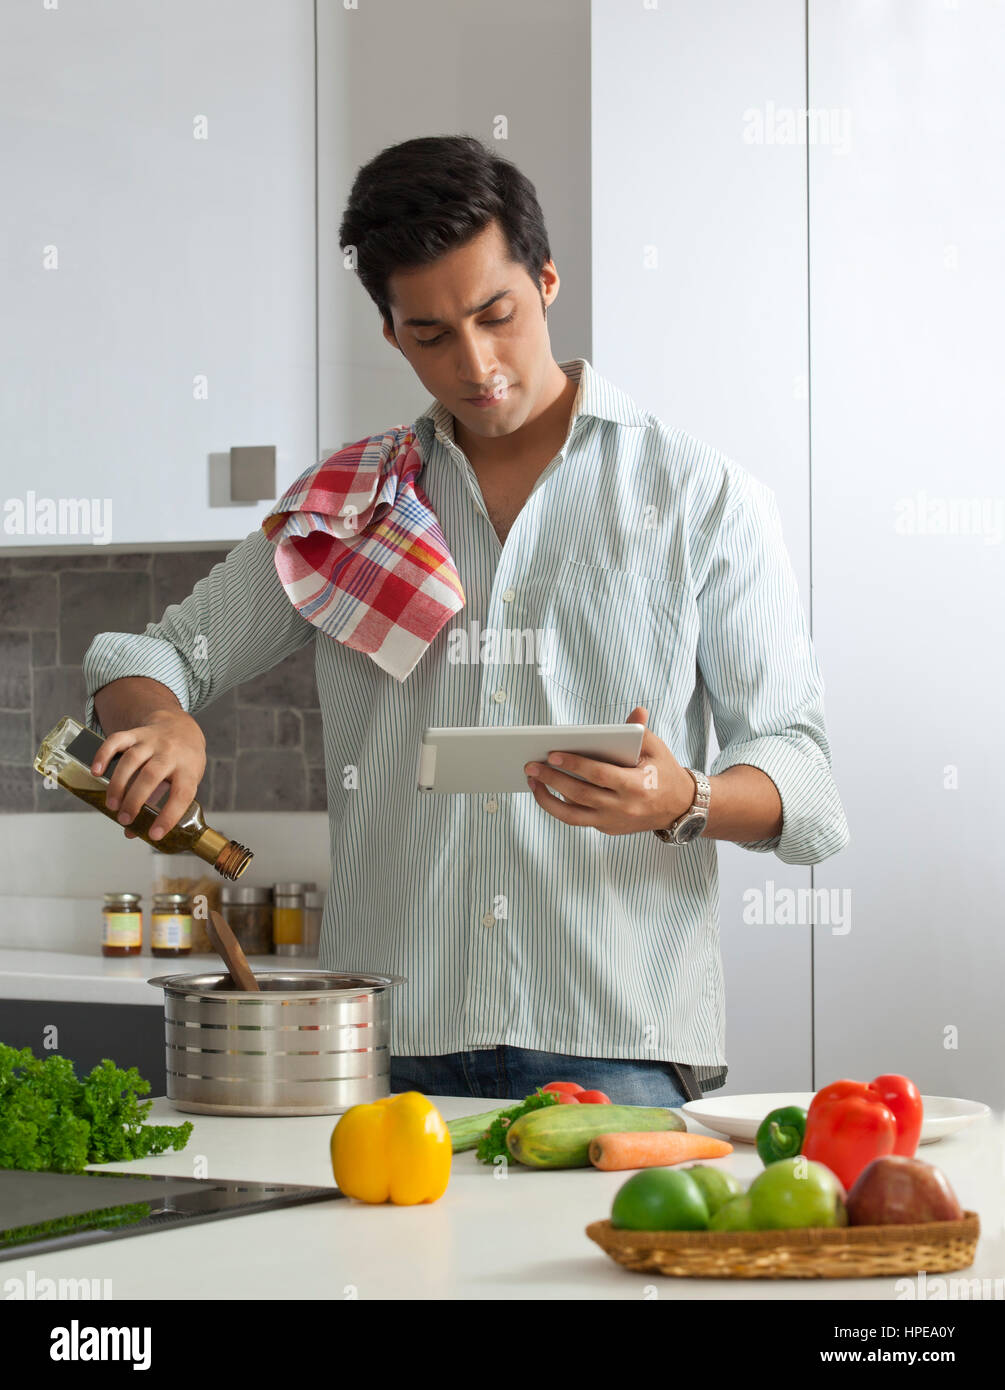 La cuisine de l'homme à l'aide d'une tablette numérique pour les recettes Banque D'Images